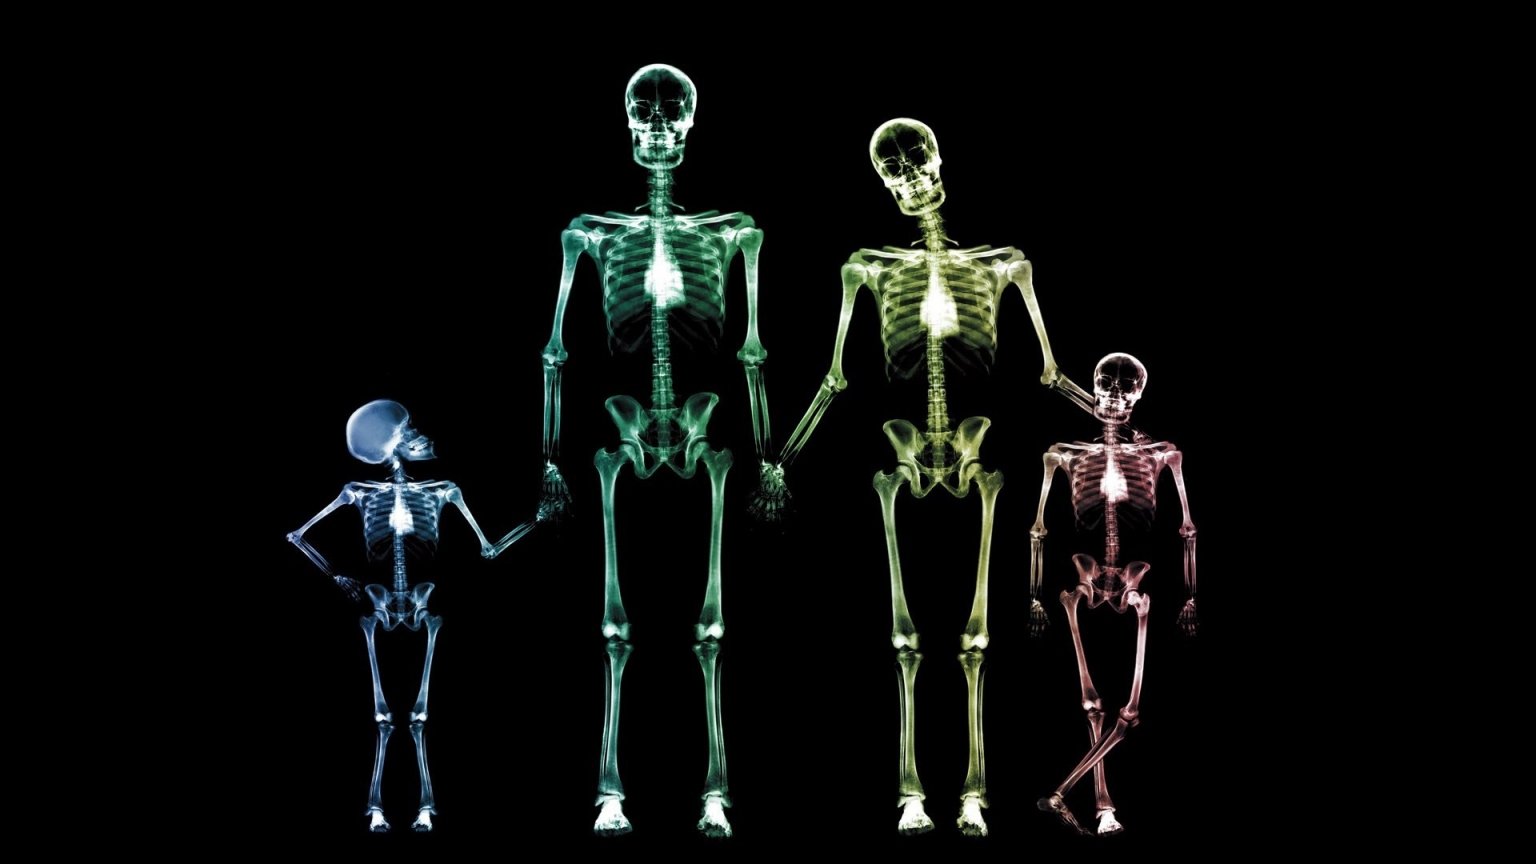 Family Skeletons for 1536 x 864 HDTV resolution